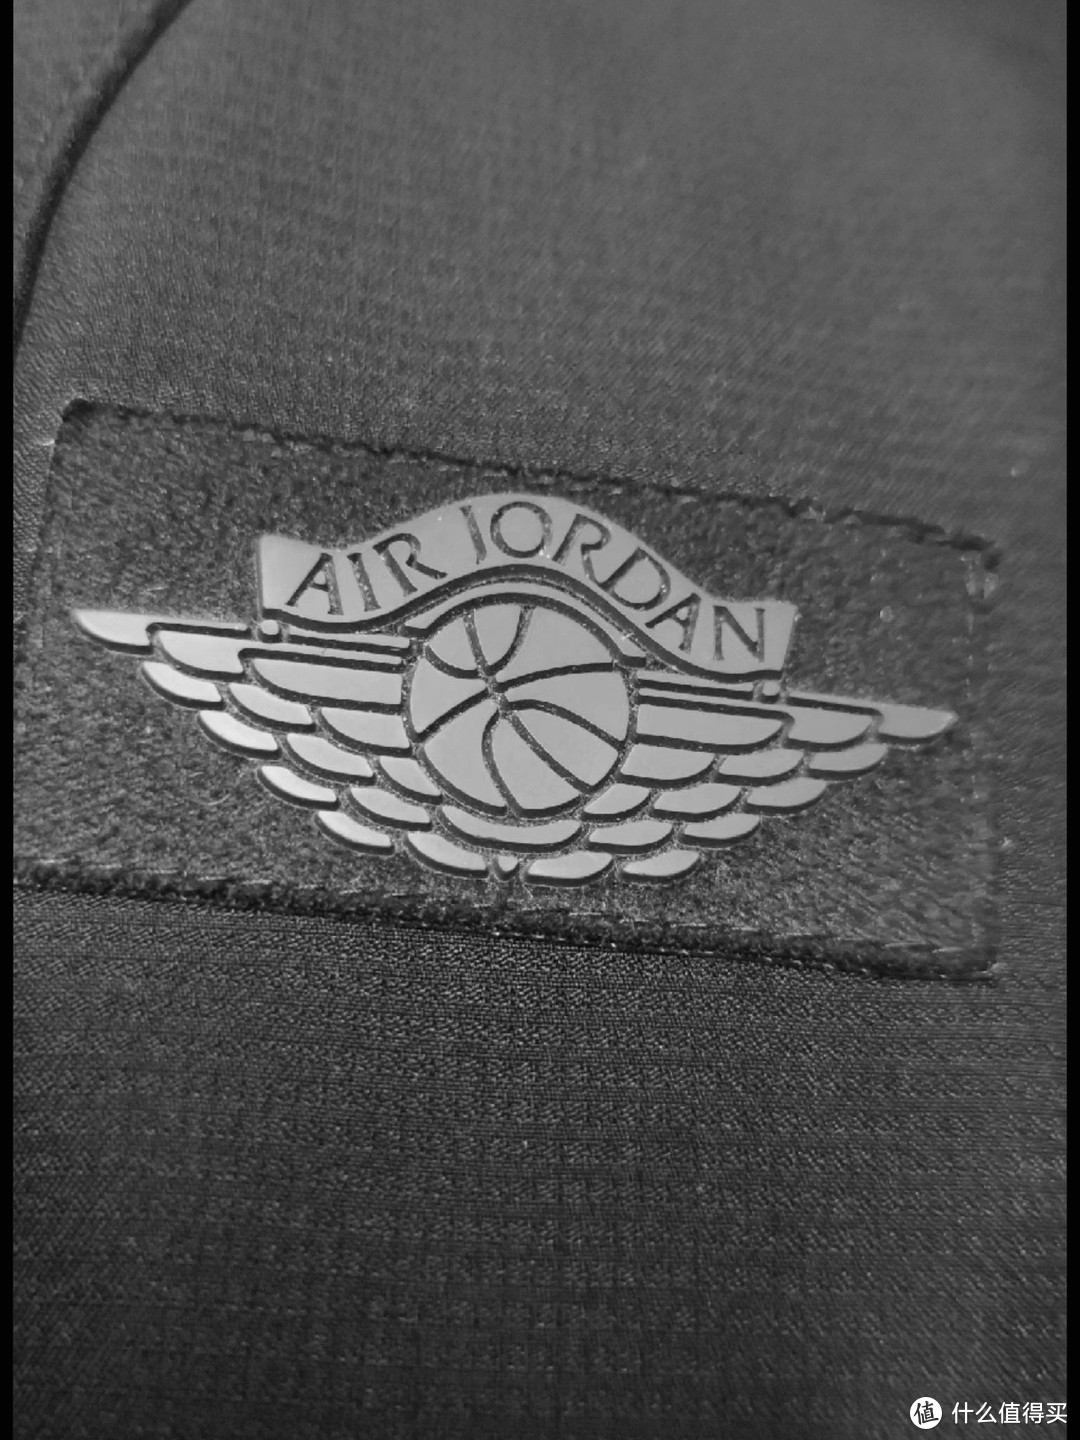 裤子前面大腿处的超经典air jordan飞翼logo